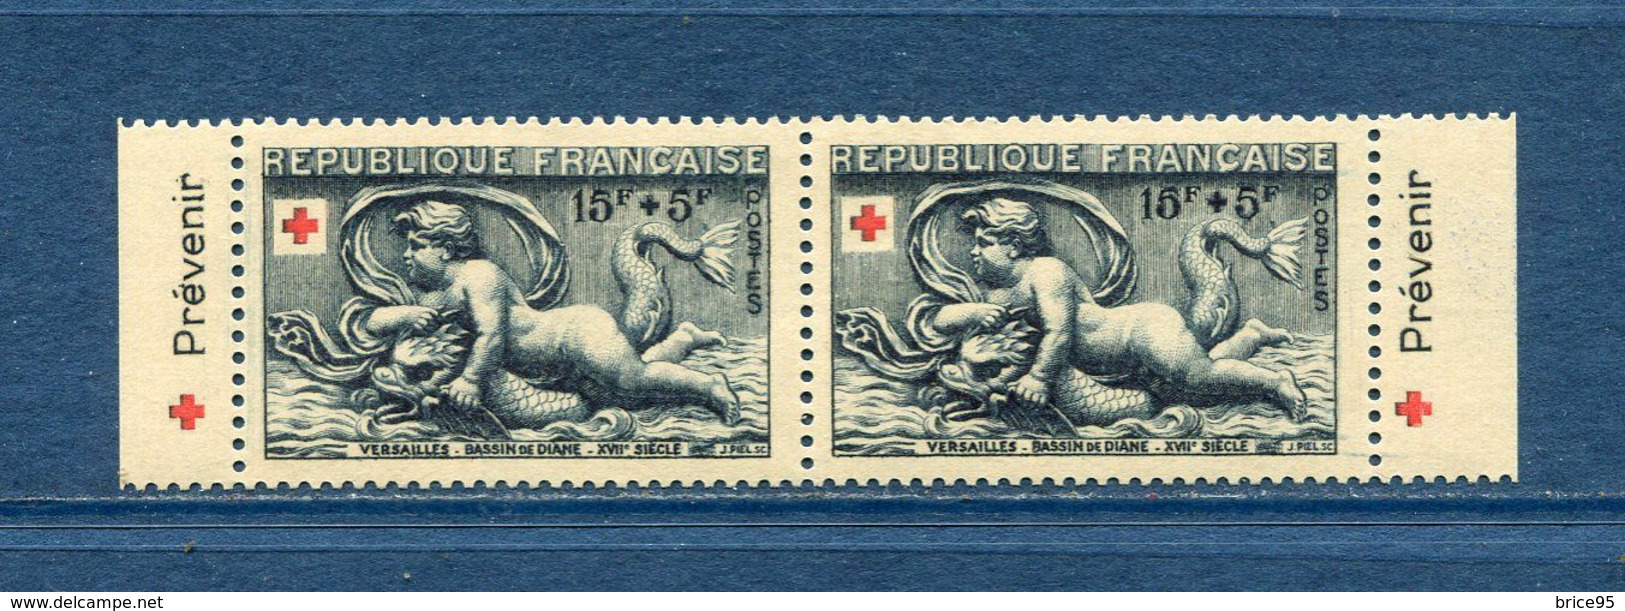 France - Croix Rouge - érinnophilie - Vignette Carnet Croix Rouge 1952 - Neuf Sans Charnière - 1952 - Rode Kruis